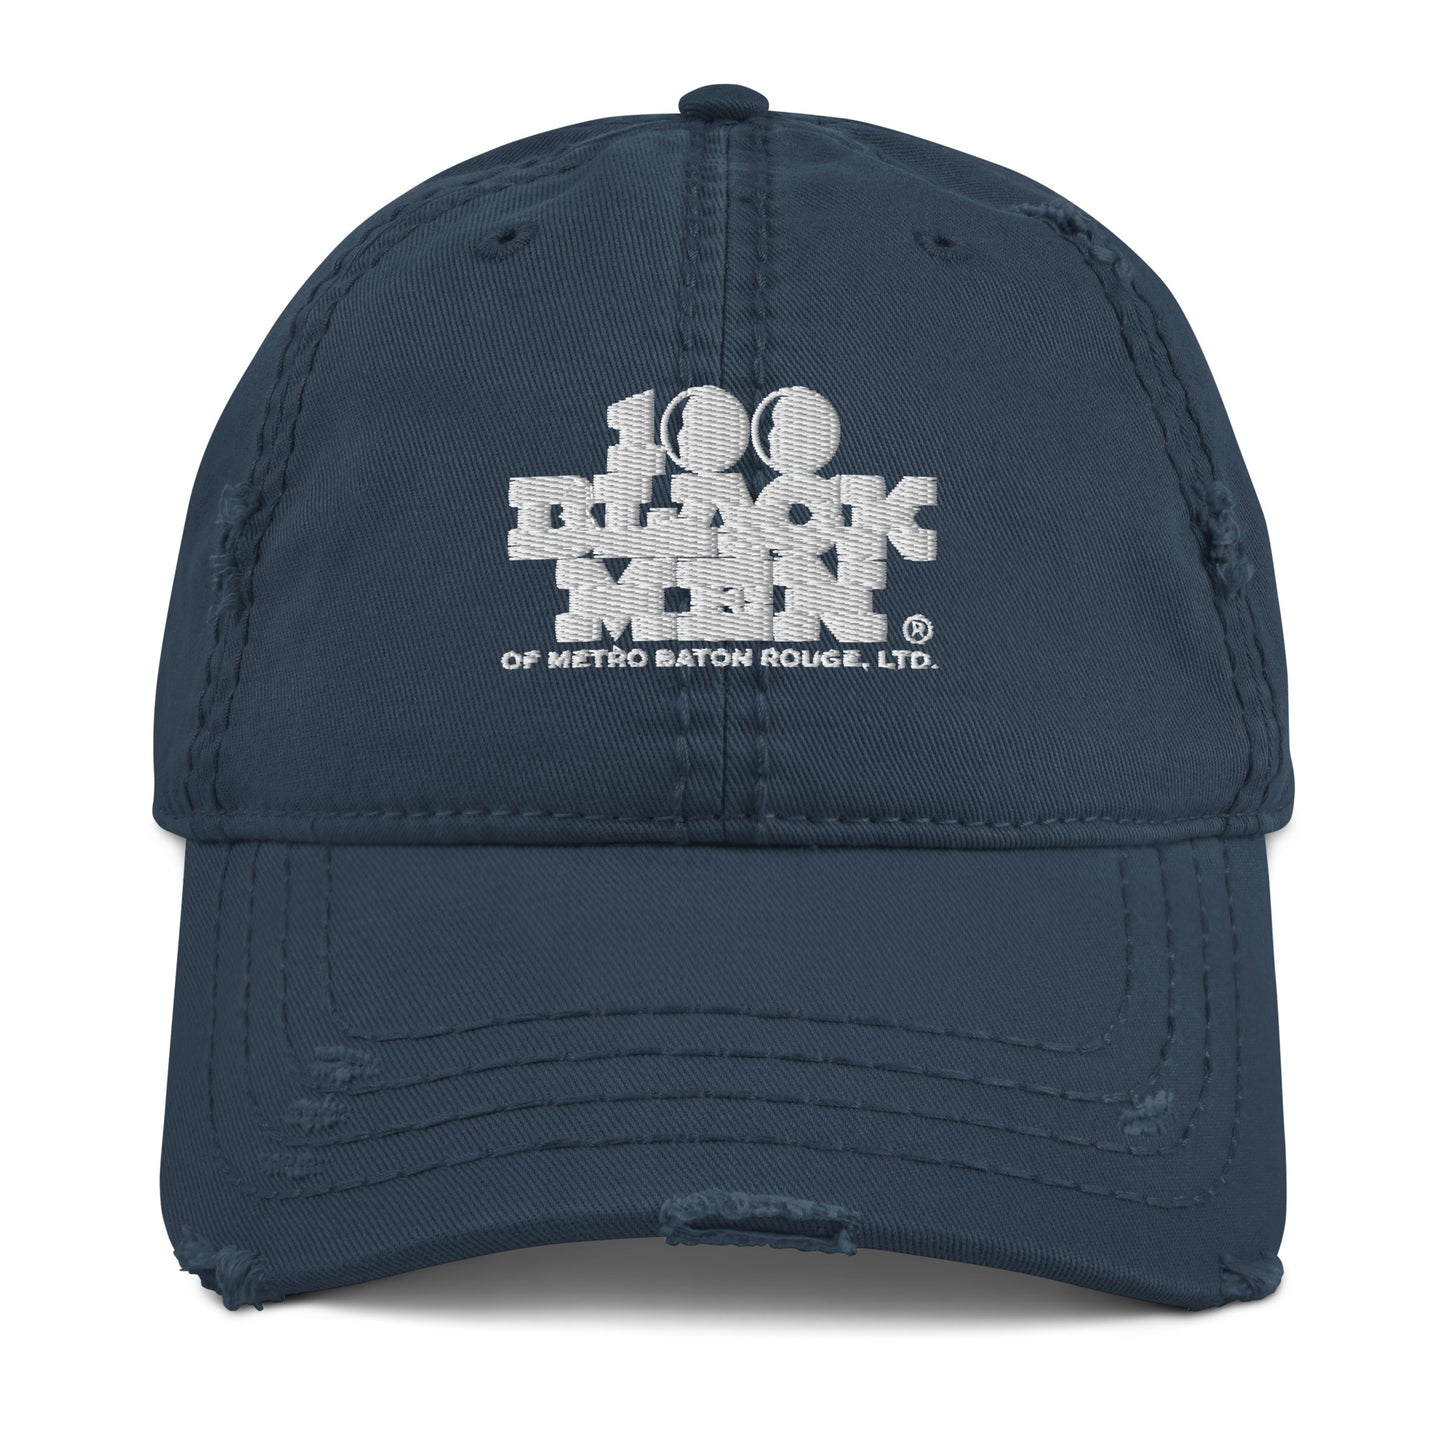 100 BLACK MEN BR Distressed Dad Hat